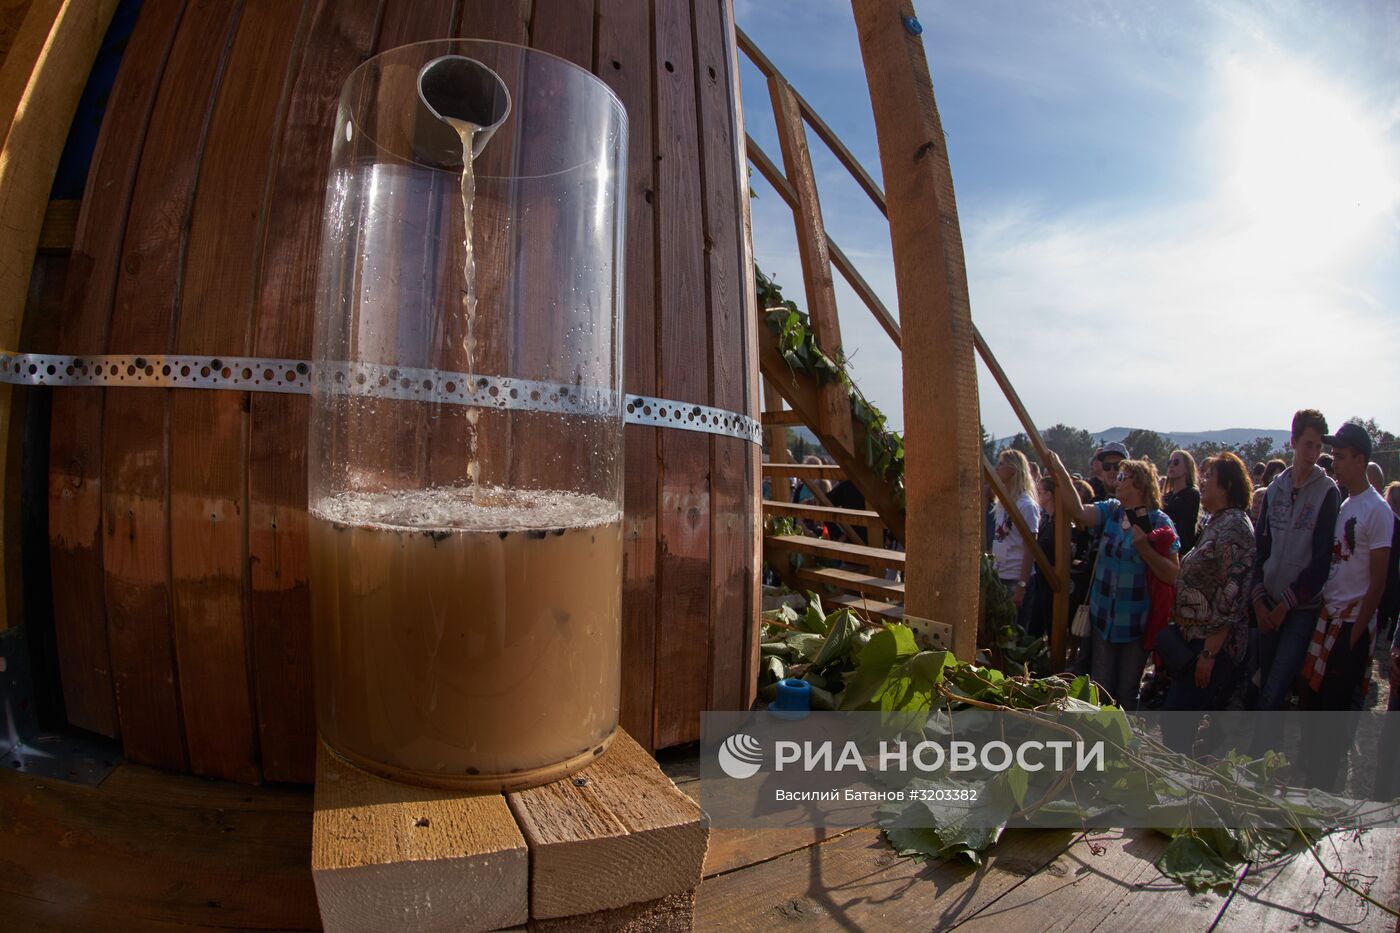 Фестиваль сбора урожая и виноделия #WineFest в Севастополе